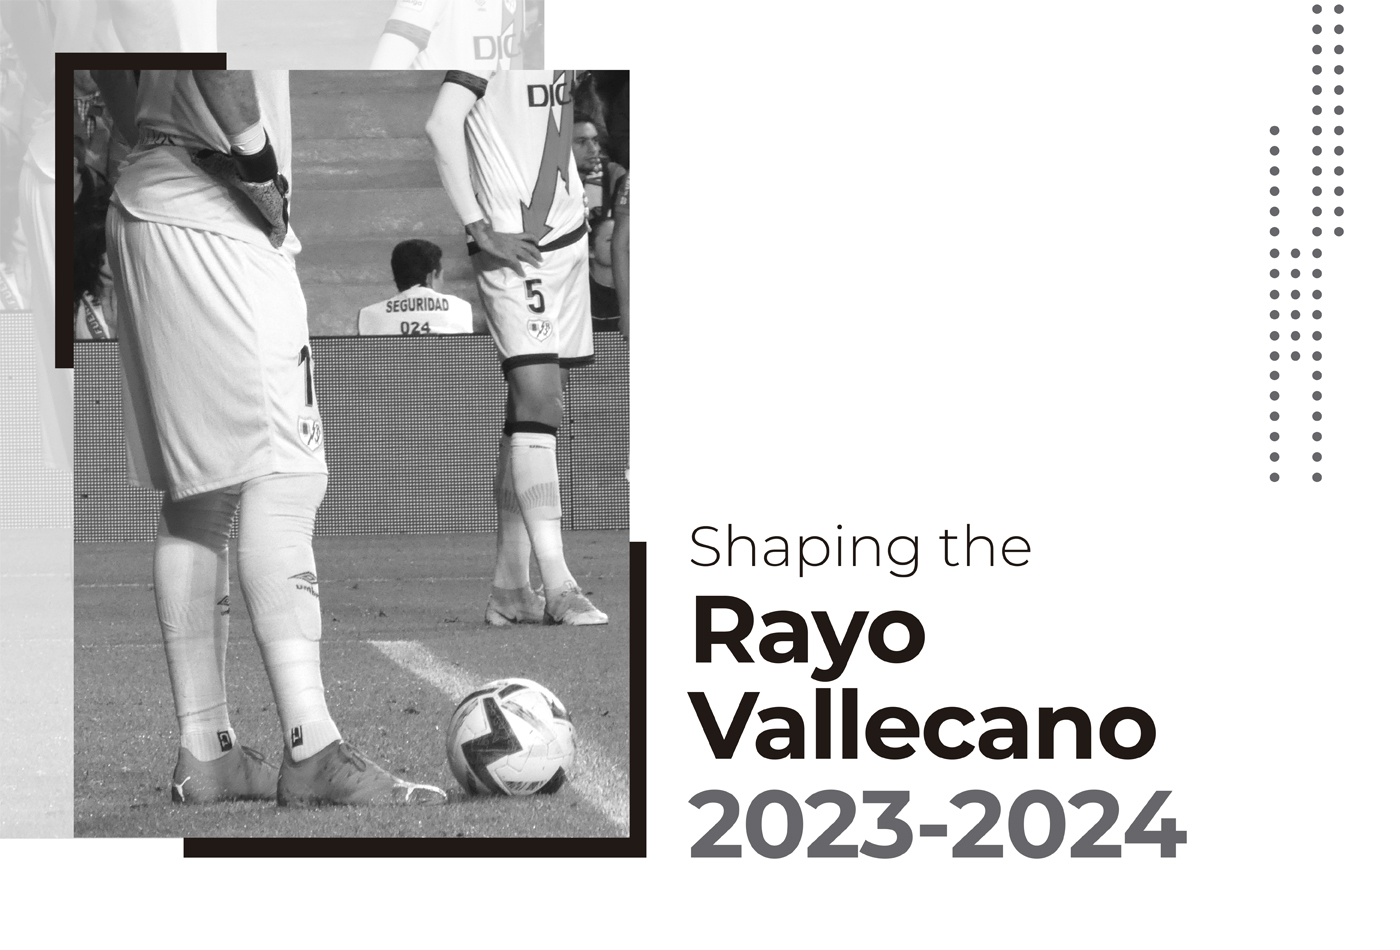 Shaping the Rayo Vallecano 23-24